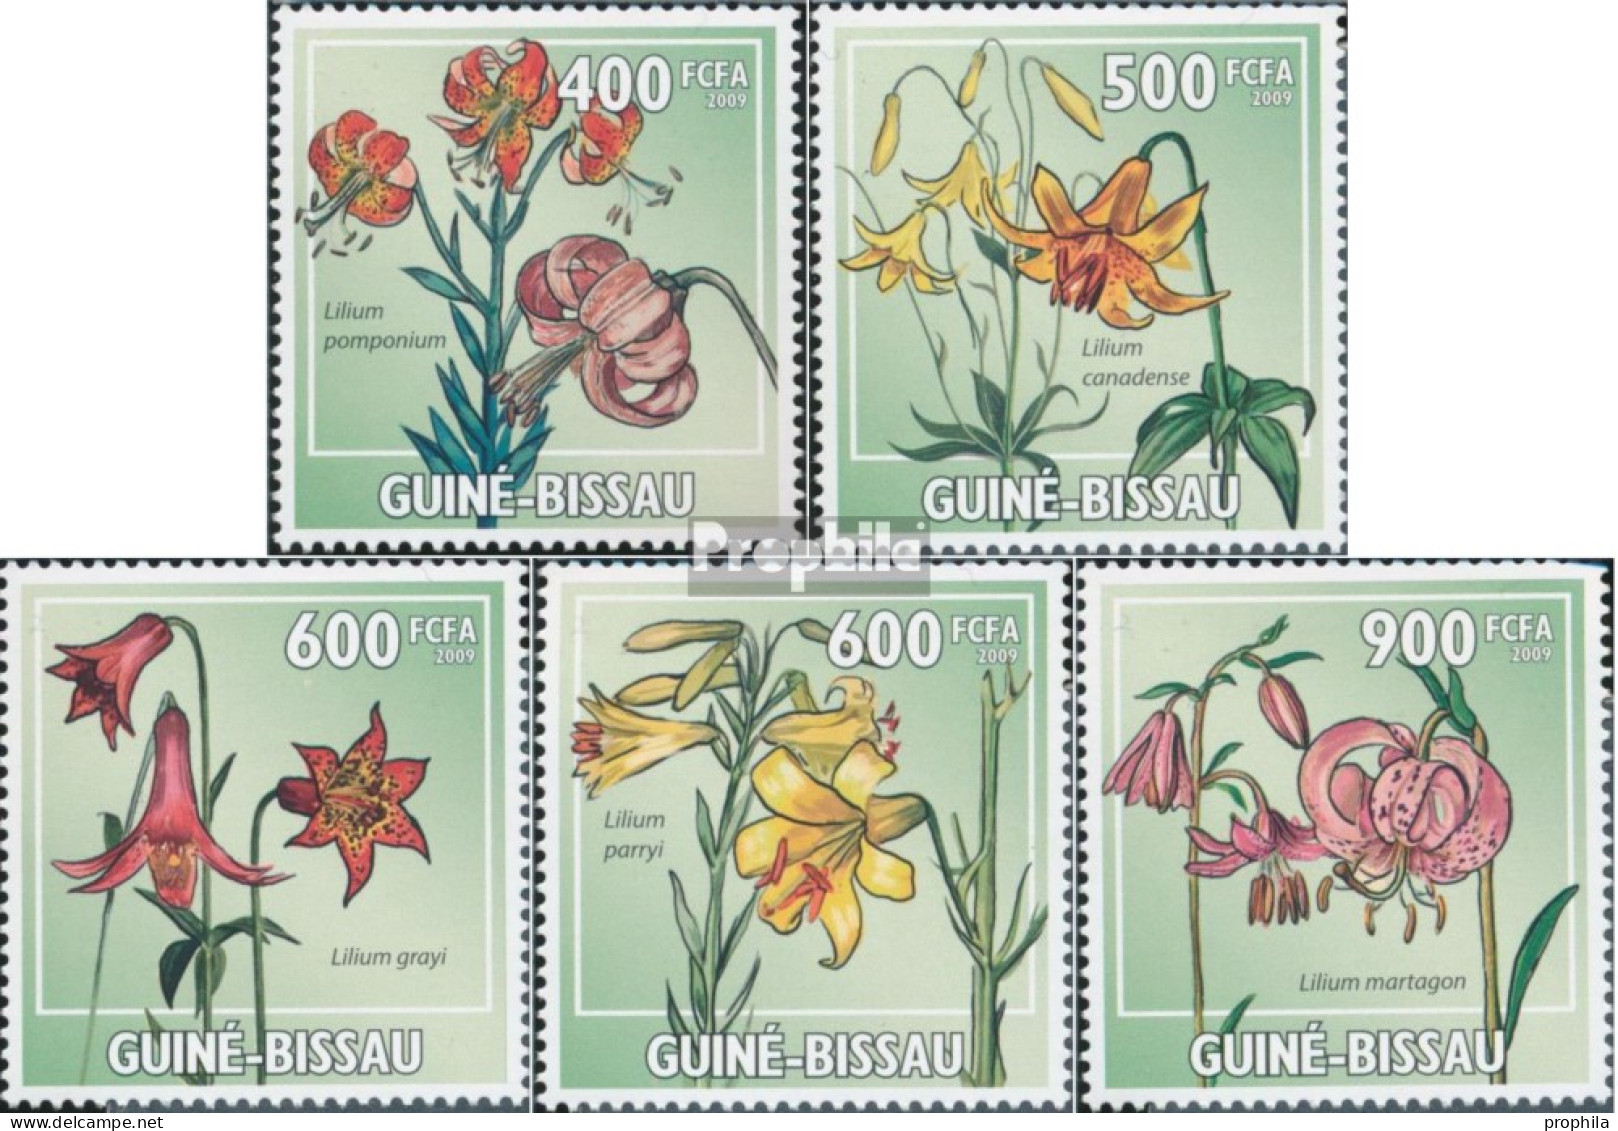 Guinea-Bissau 4450-4454 (kompl. Ausgabe) Postfrisch 2009 Lilien - Guinea-Bissau